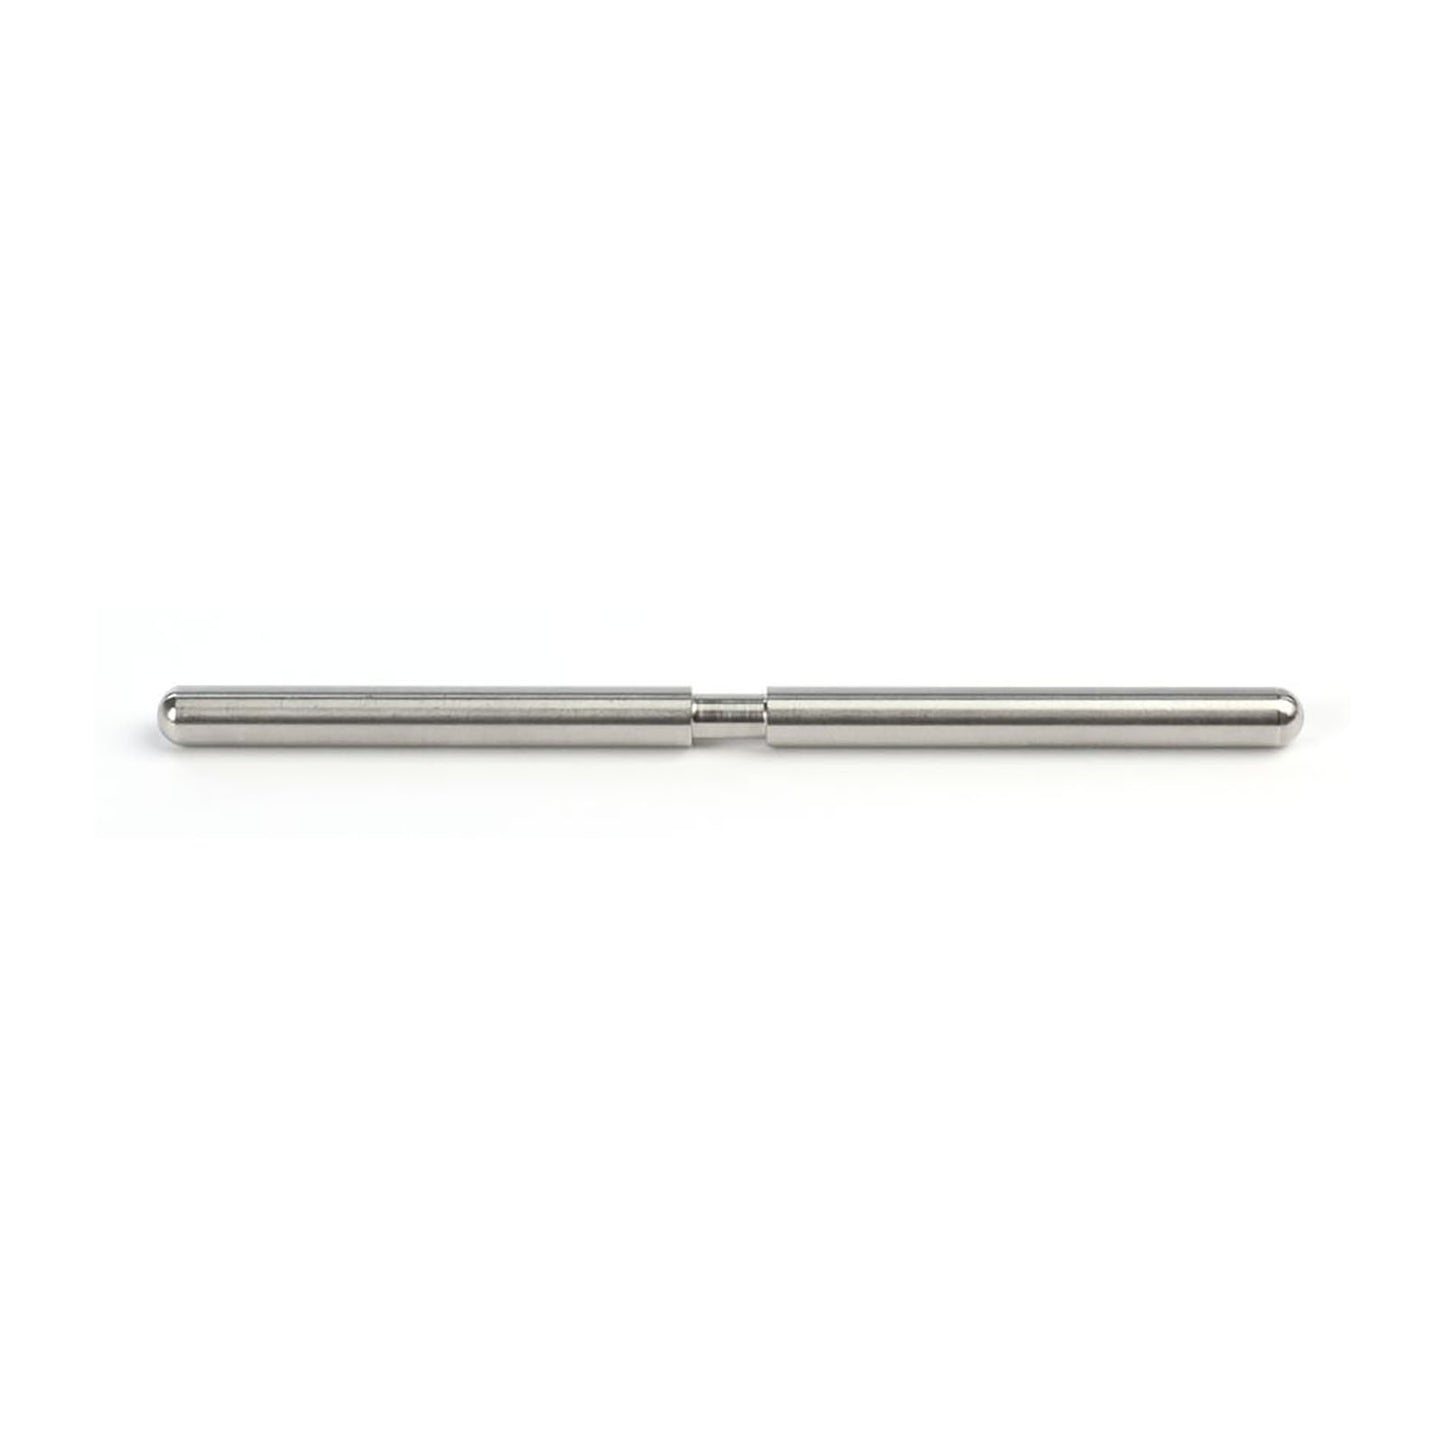 GEDORE PRO 1350 FH - Clutch dynamometric screwdriver PGNP 2.5-13.5Nm (2927780)